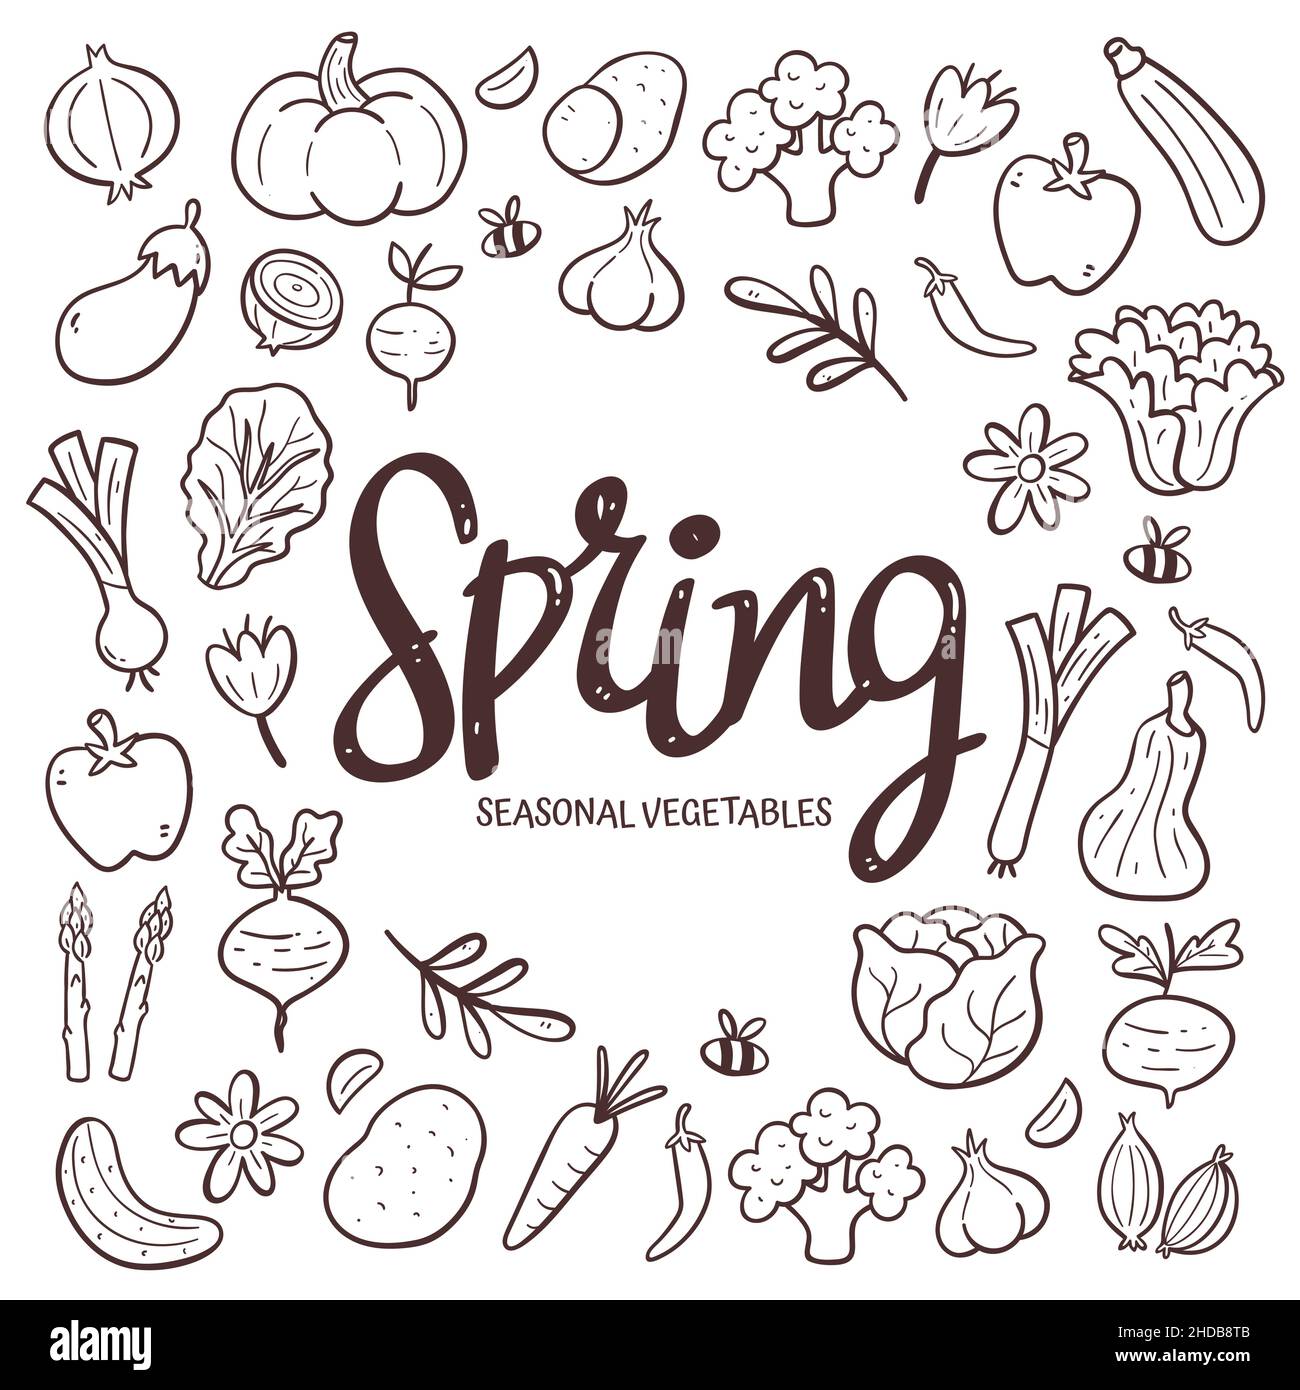 Saisonales Gemüse im Hintergrund. Handgezeichnete Frühlingsgemüse Komposition aus Doodle Vektor-Icons, isoliert auf weißem Hintergrund. Stock Vektor